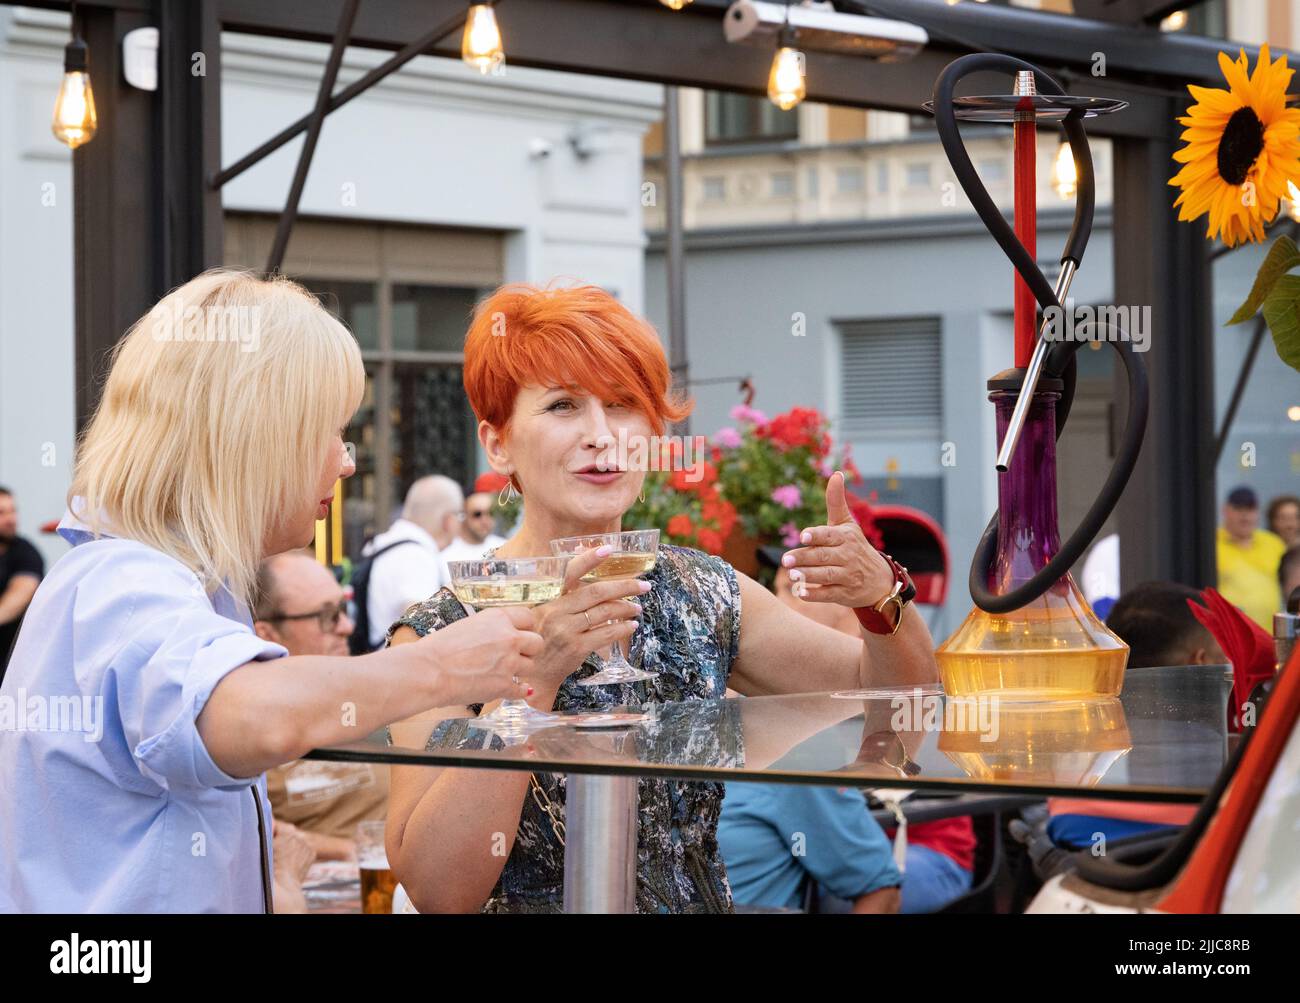 Amici del vino; due donne bevono vino in una serata fuori in un bar, riga, Lettonia Europa. Stile di vita europeo Foto Stock